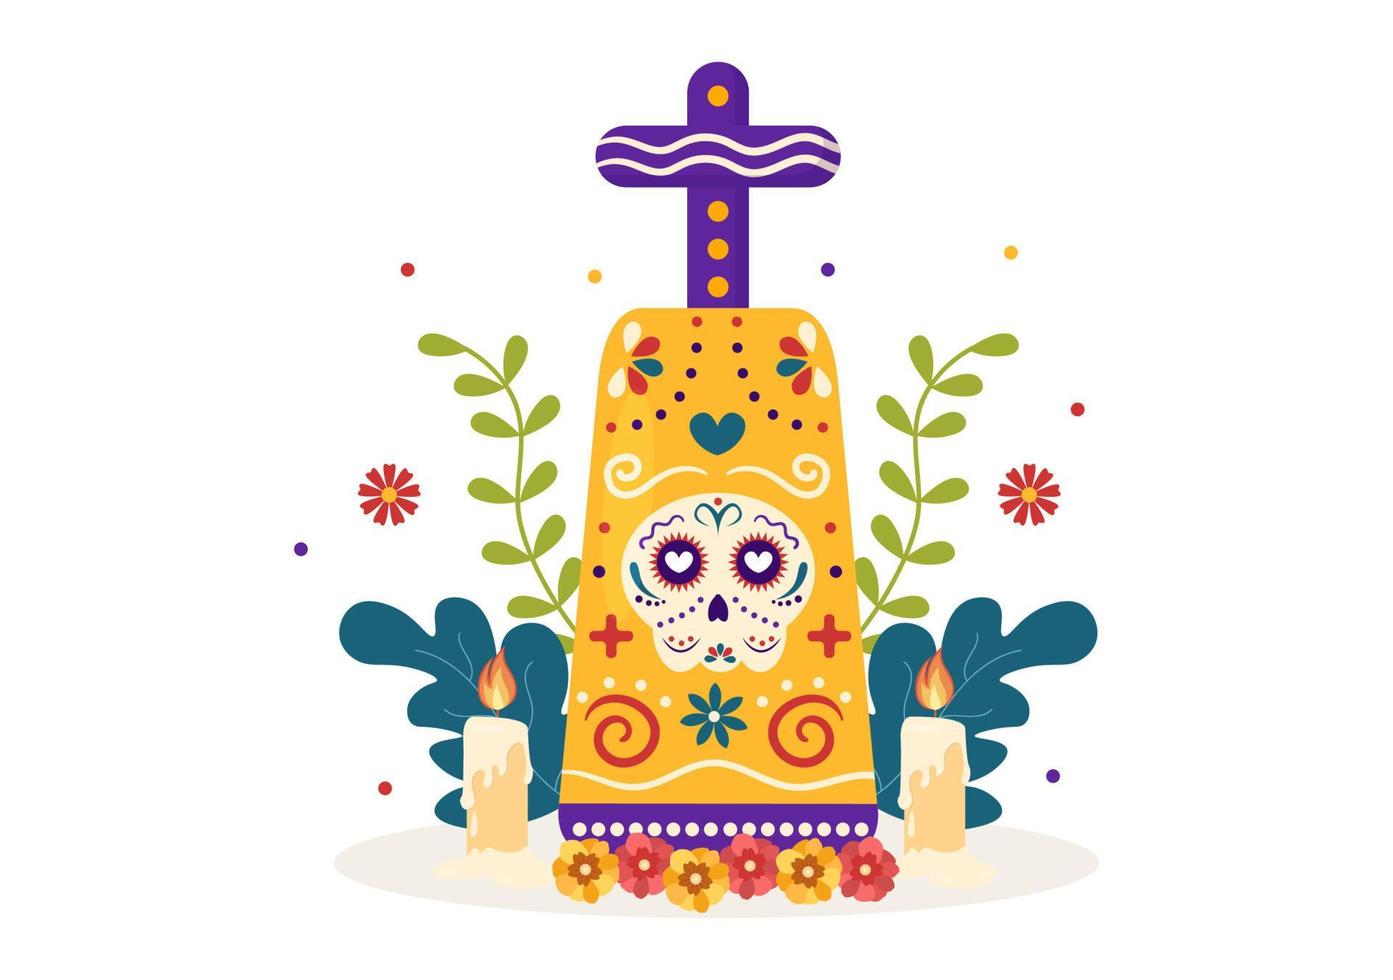 dia de los muertos ou dia dos mortos modelo mão desenhada cartoon ilustração plana festival de férias mexicano com caveiras de tatuagem, maracas e sombrero vetor